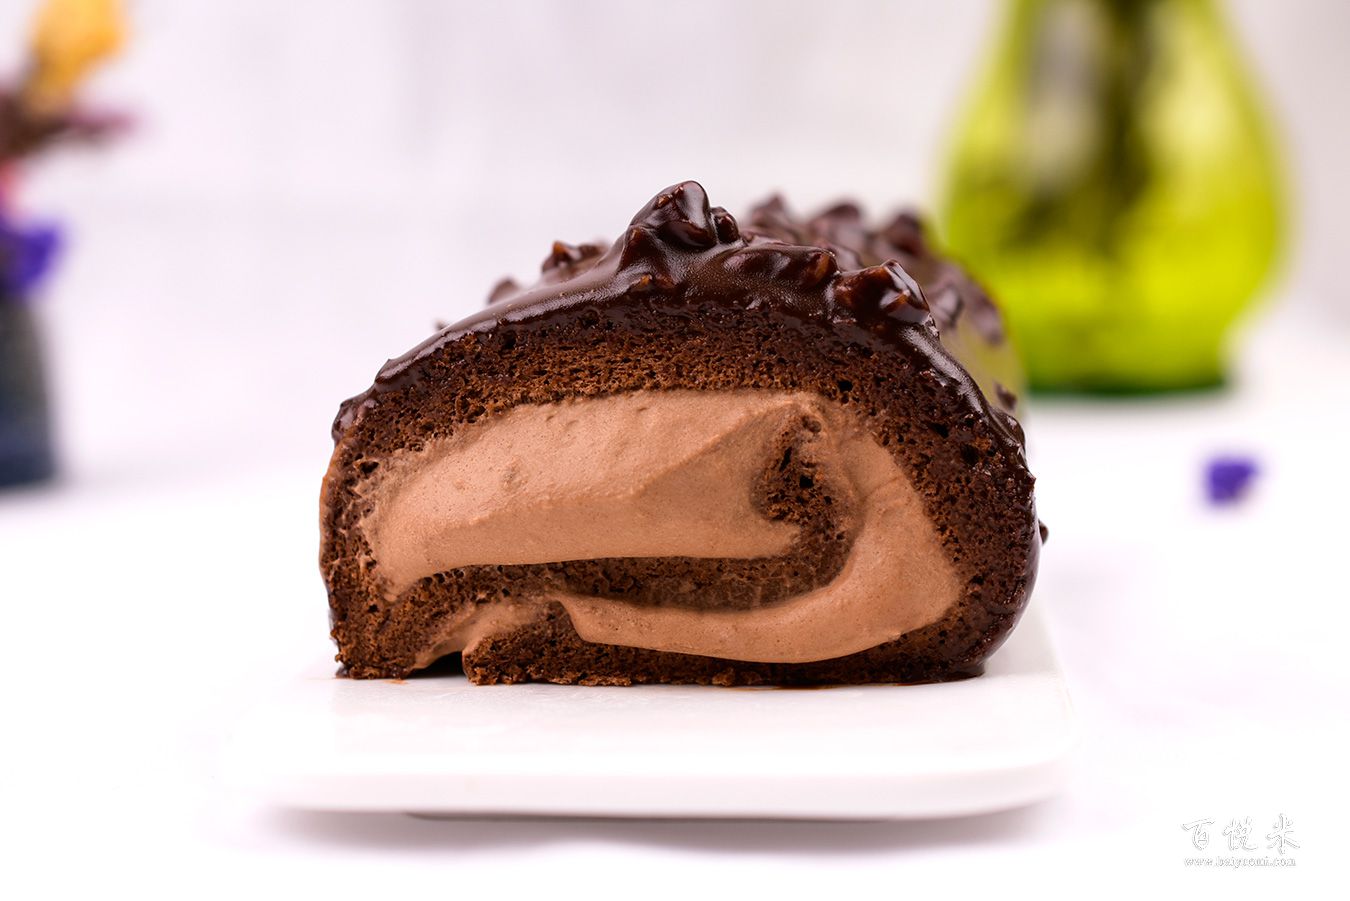 巧克力梦龙蛋糕卷的制作配方 | EHS咖啡西点培训学院